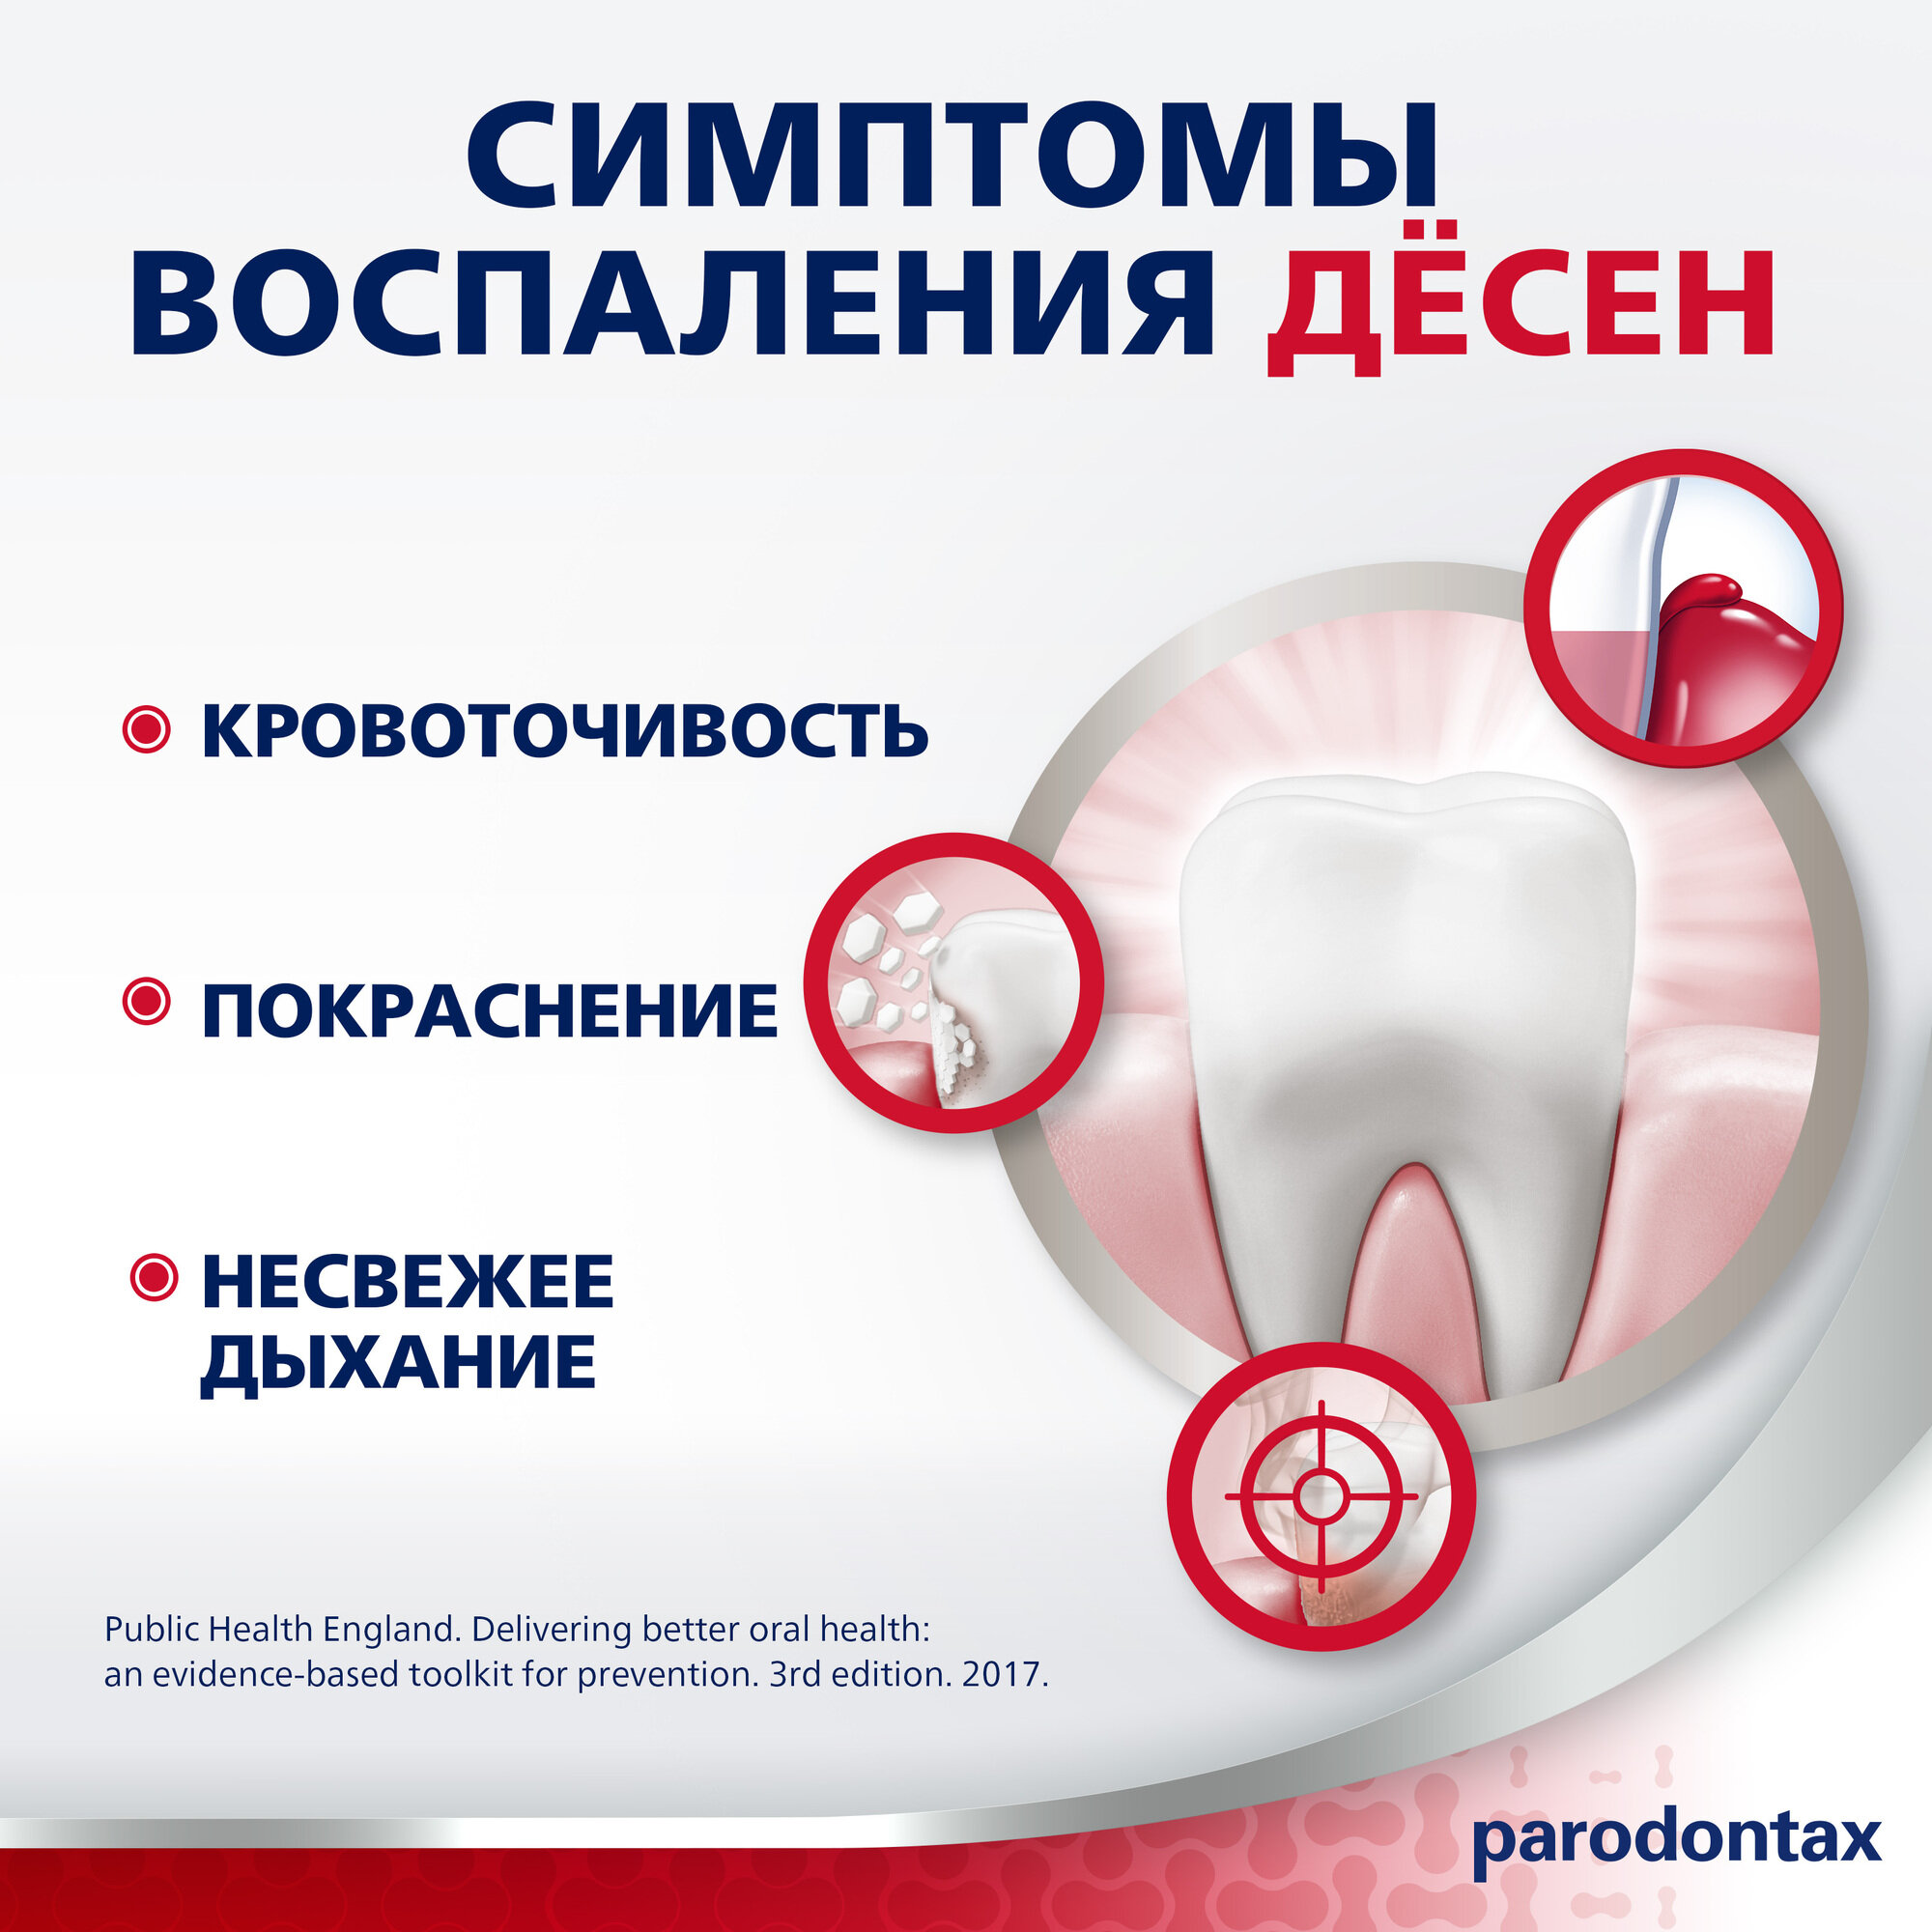 Зубная паста parodontax без Фтора от воспаления и кровоточивости десен для удаления зубного налета и поддержания здоровья десен, 75 мл